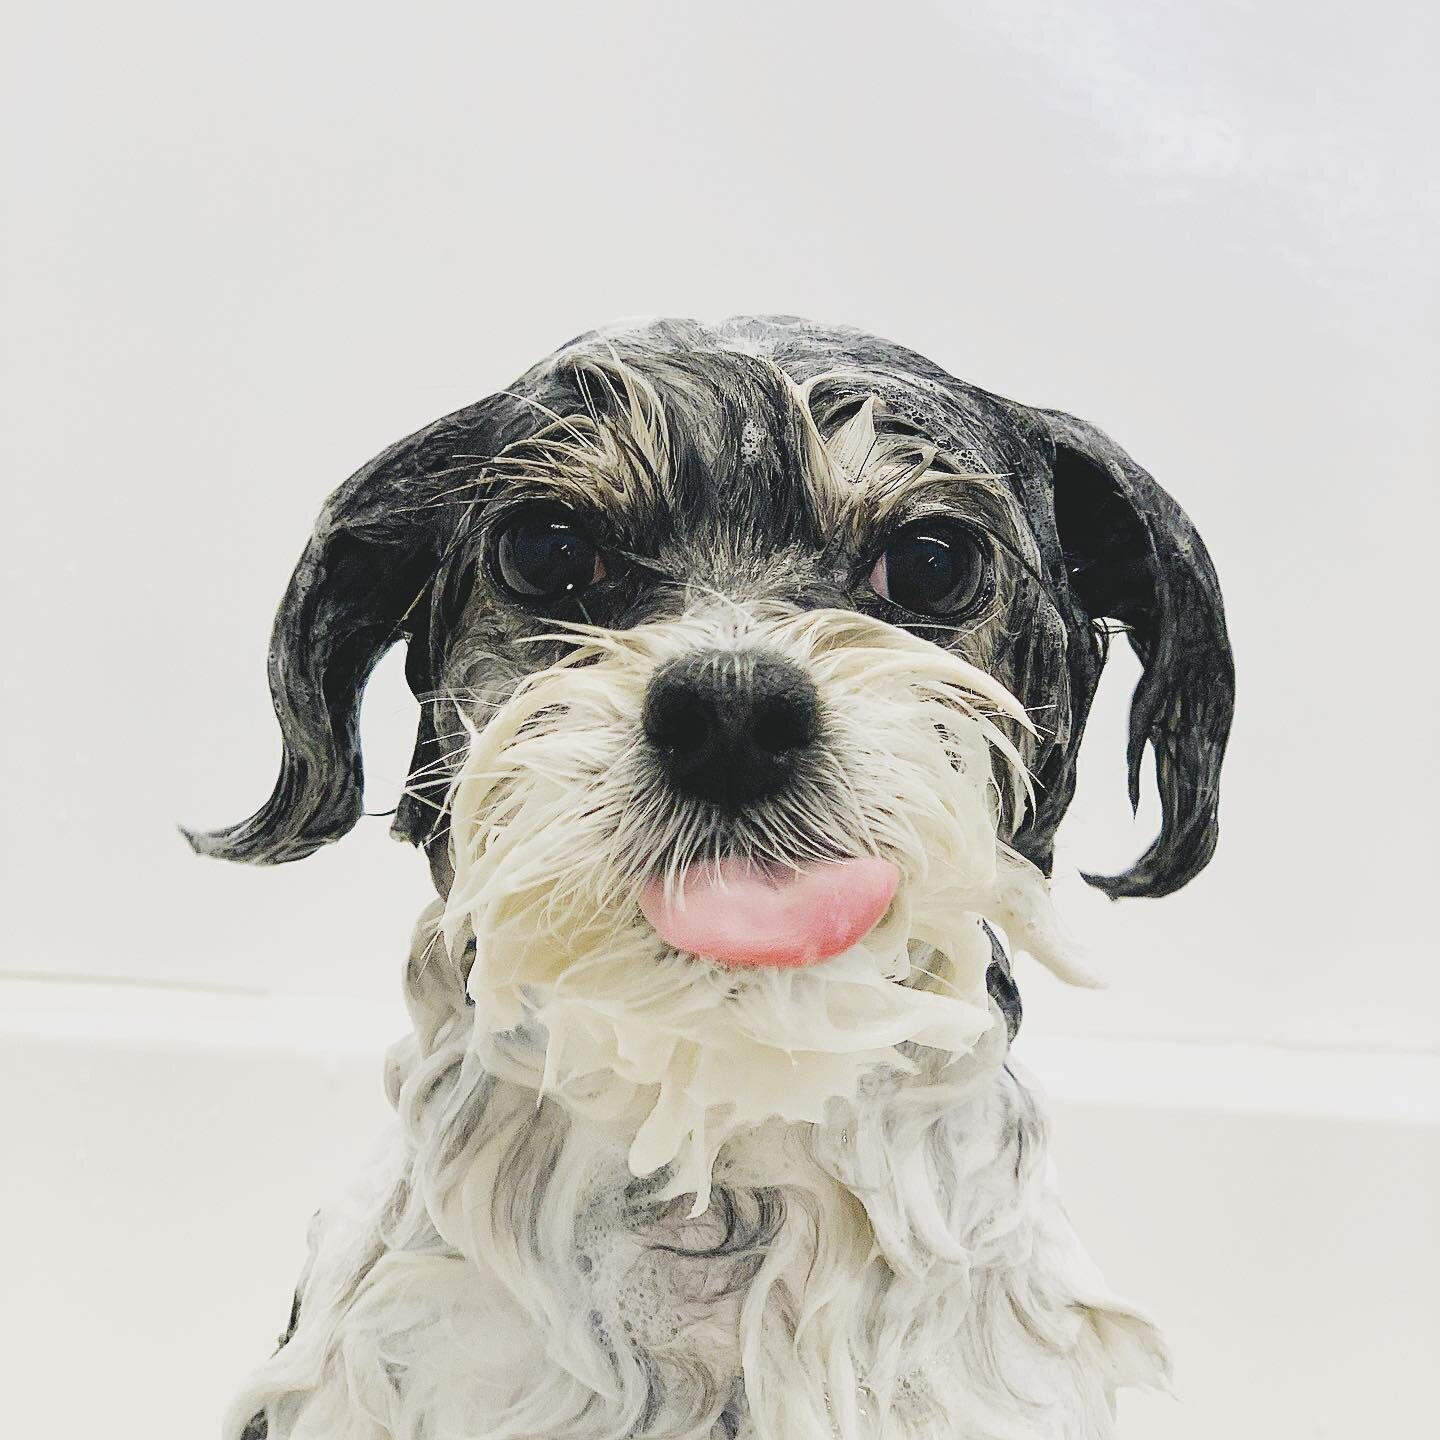 Tongue out Tuesday #imwinnie #barkandbrush #wetdog #dogslovebathtime #experientialspaw #squeekyclean #dogsinthetub #dogsofmississauga #ilovedogs #petstylist #dogroomer